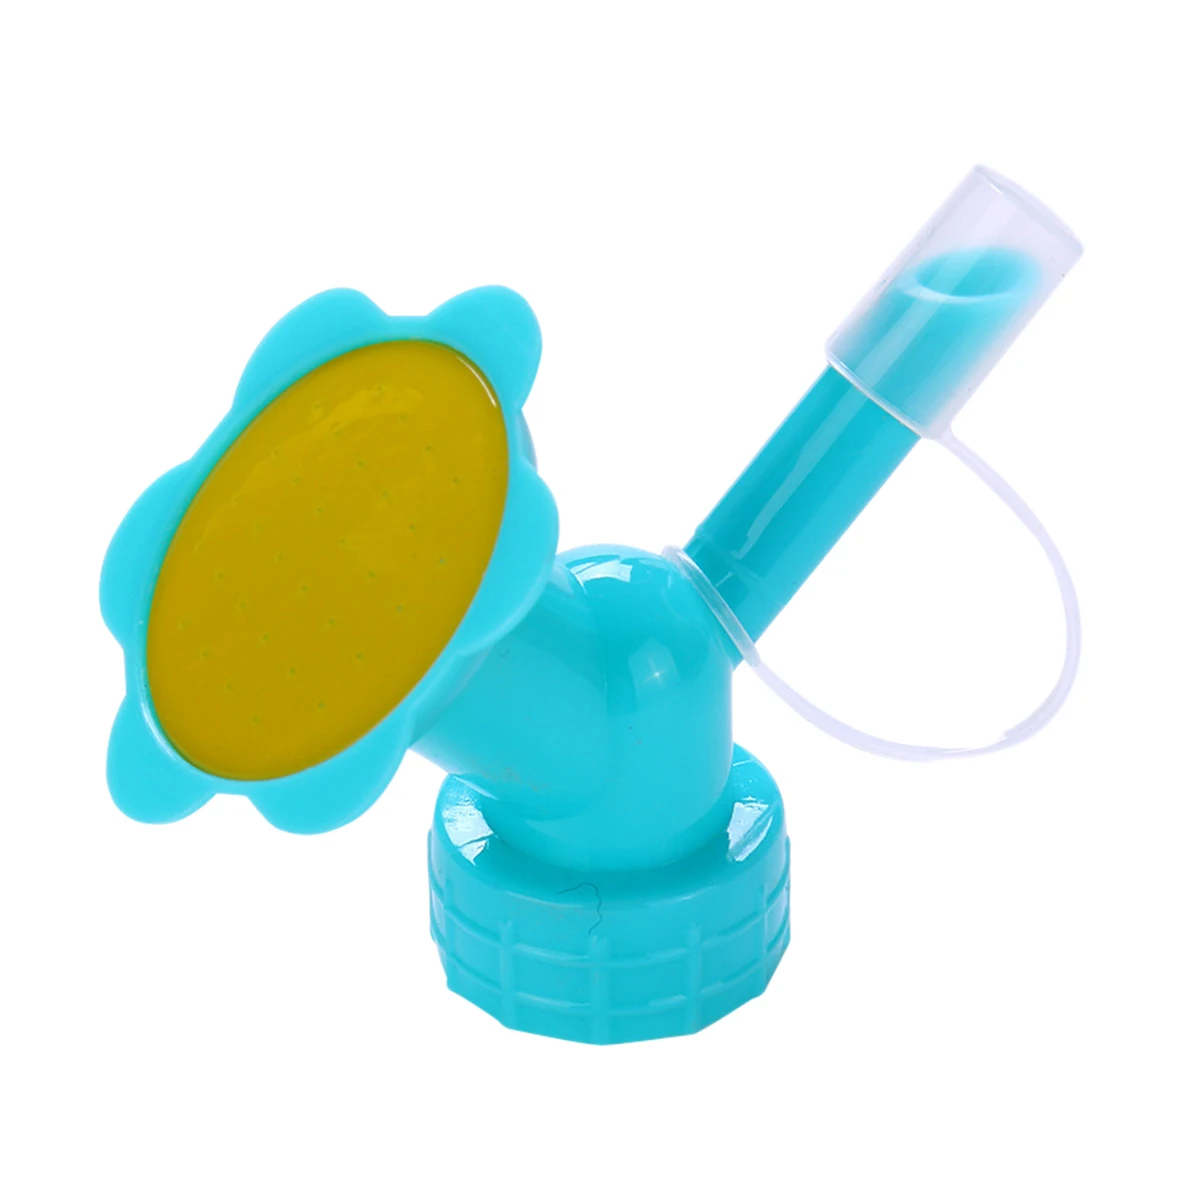 Спринклер с двойной головкой и длинным горлышком бытовое устройство для полива в